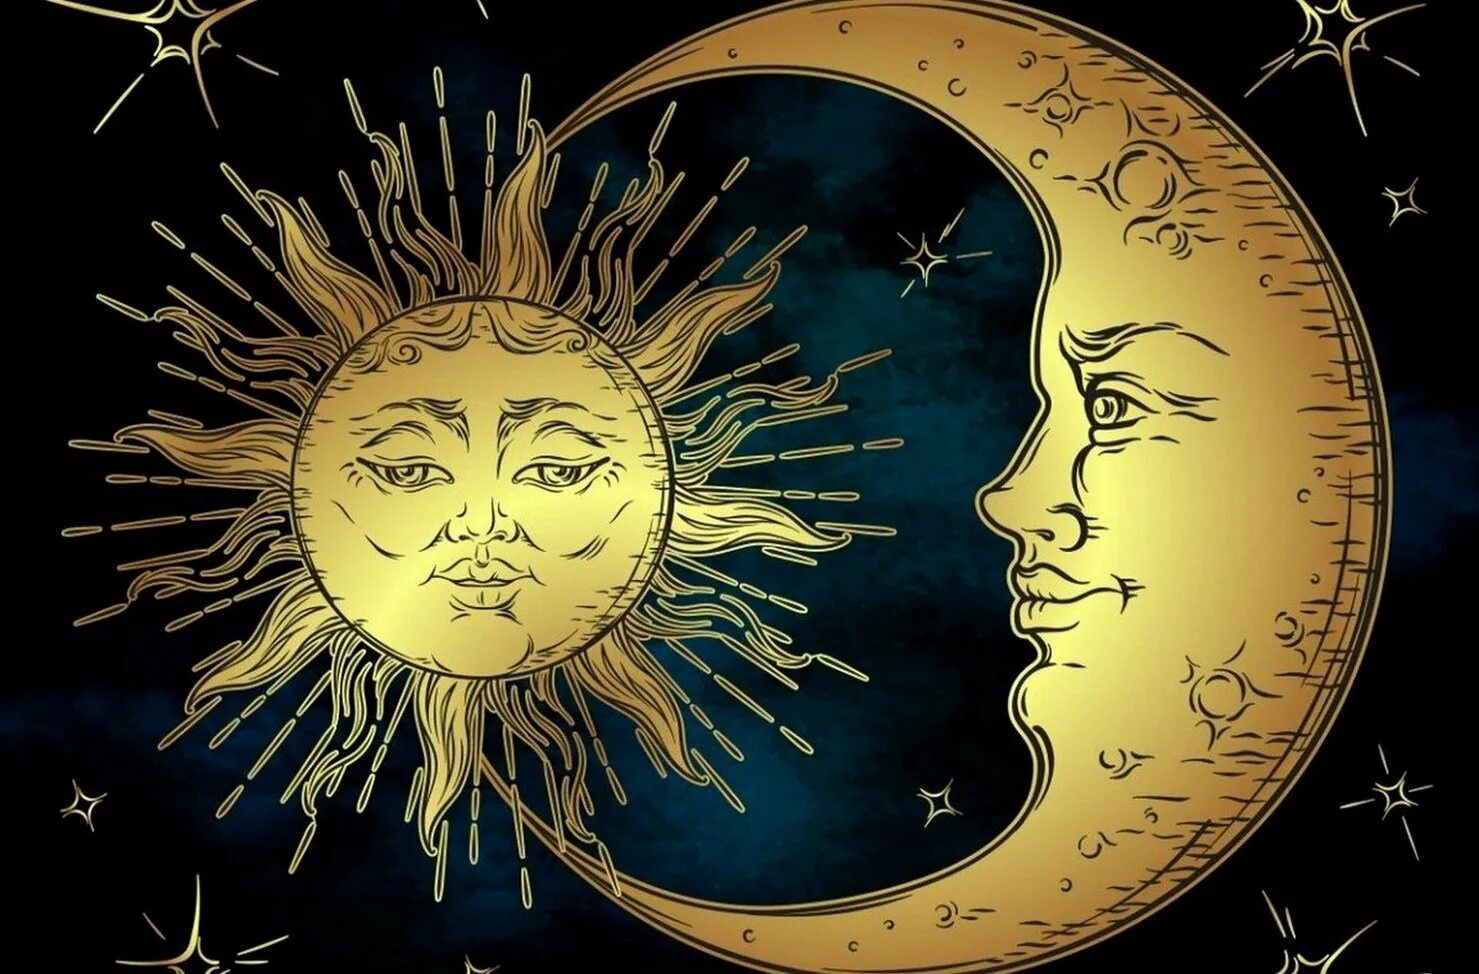 Солнце и Луна. Kjcywt b Keyf. Изображение солнца и Луны. Солнце и месяц. Карта солнца и луны